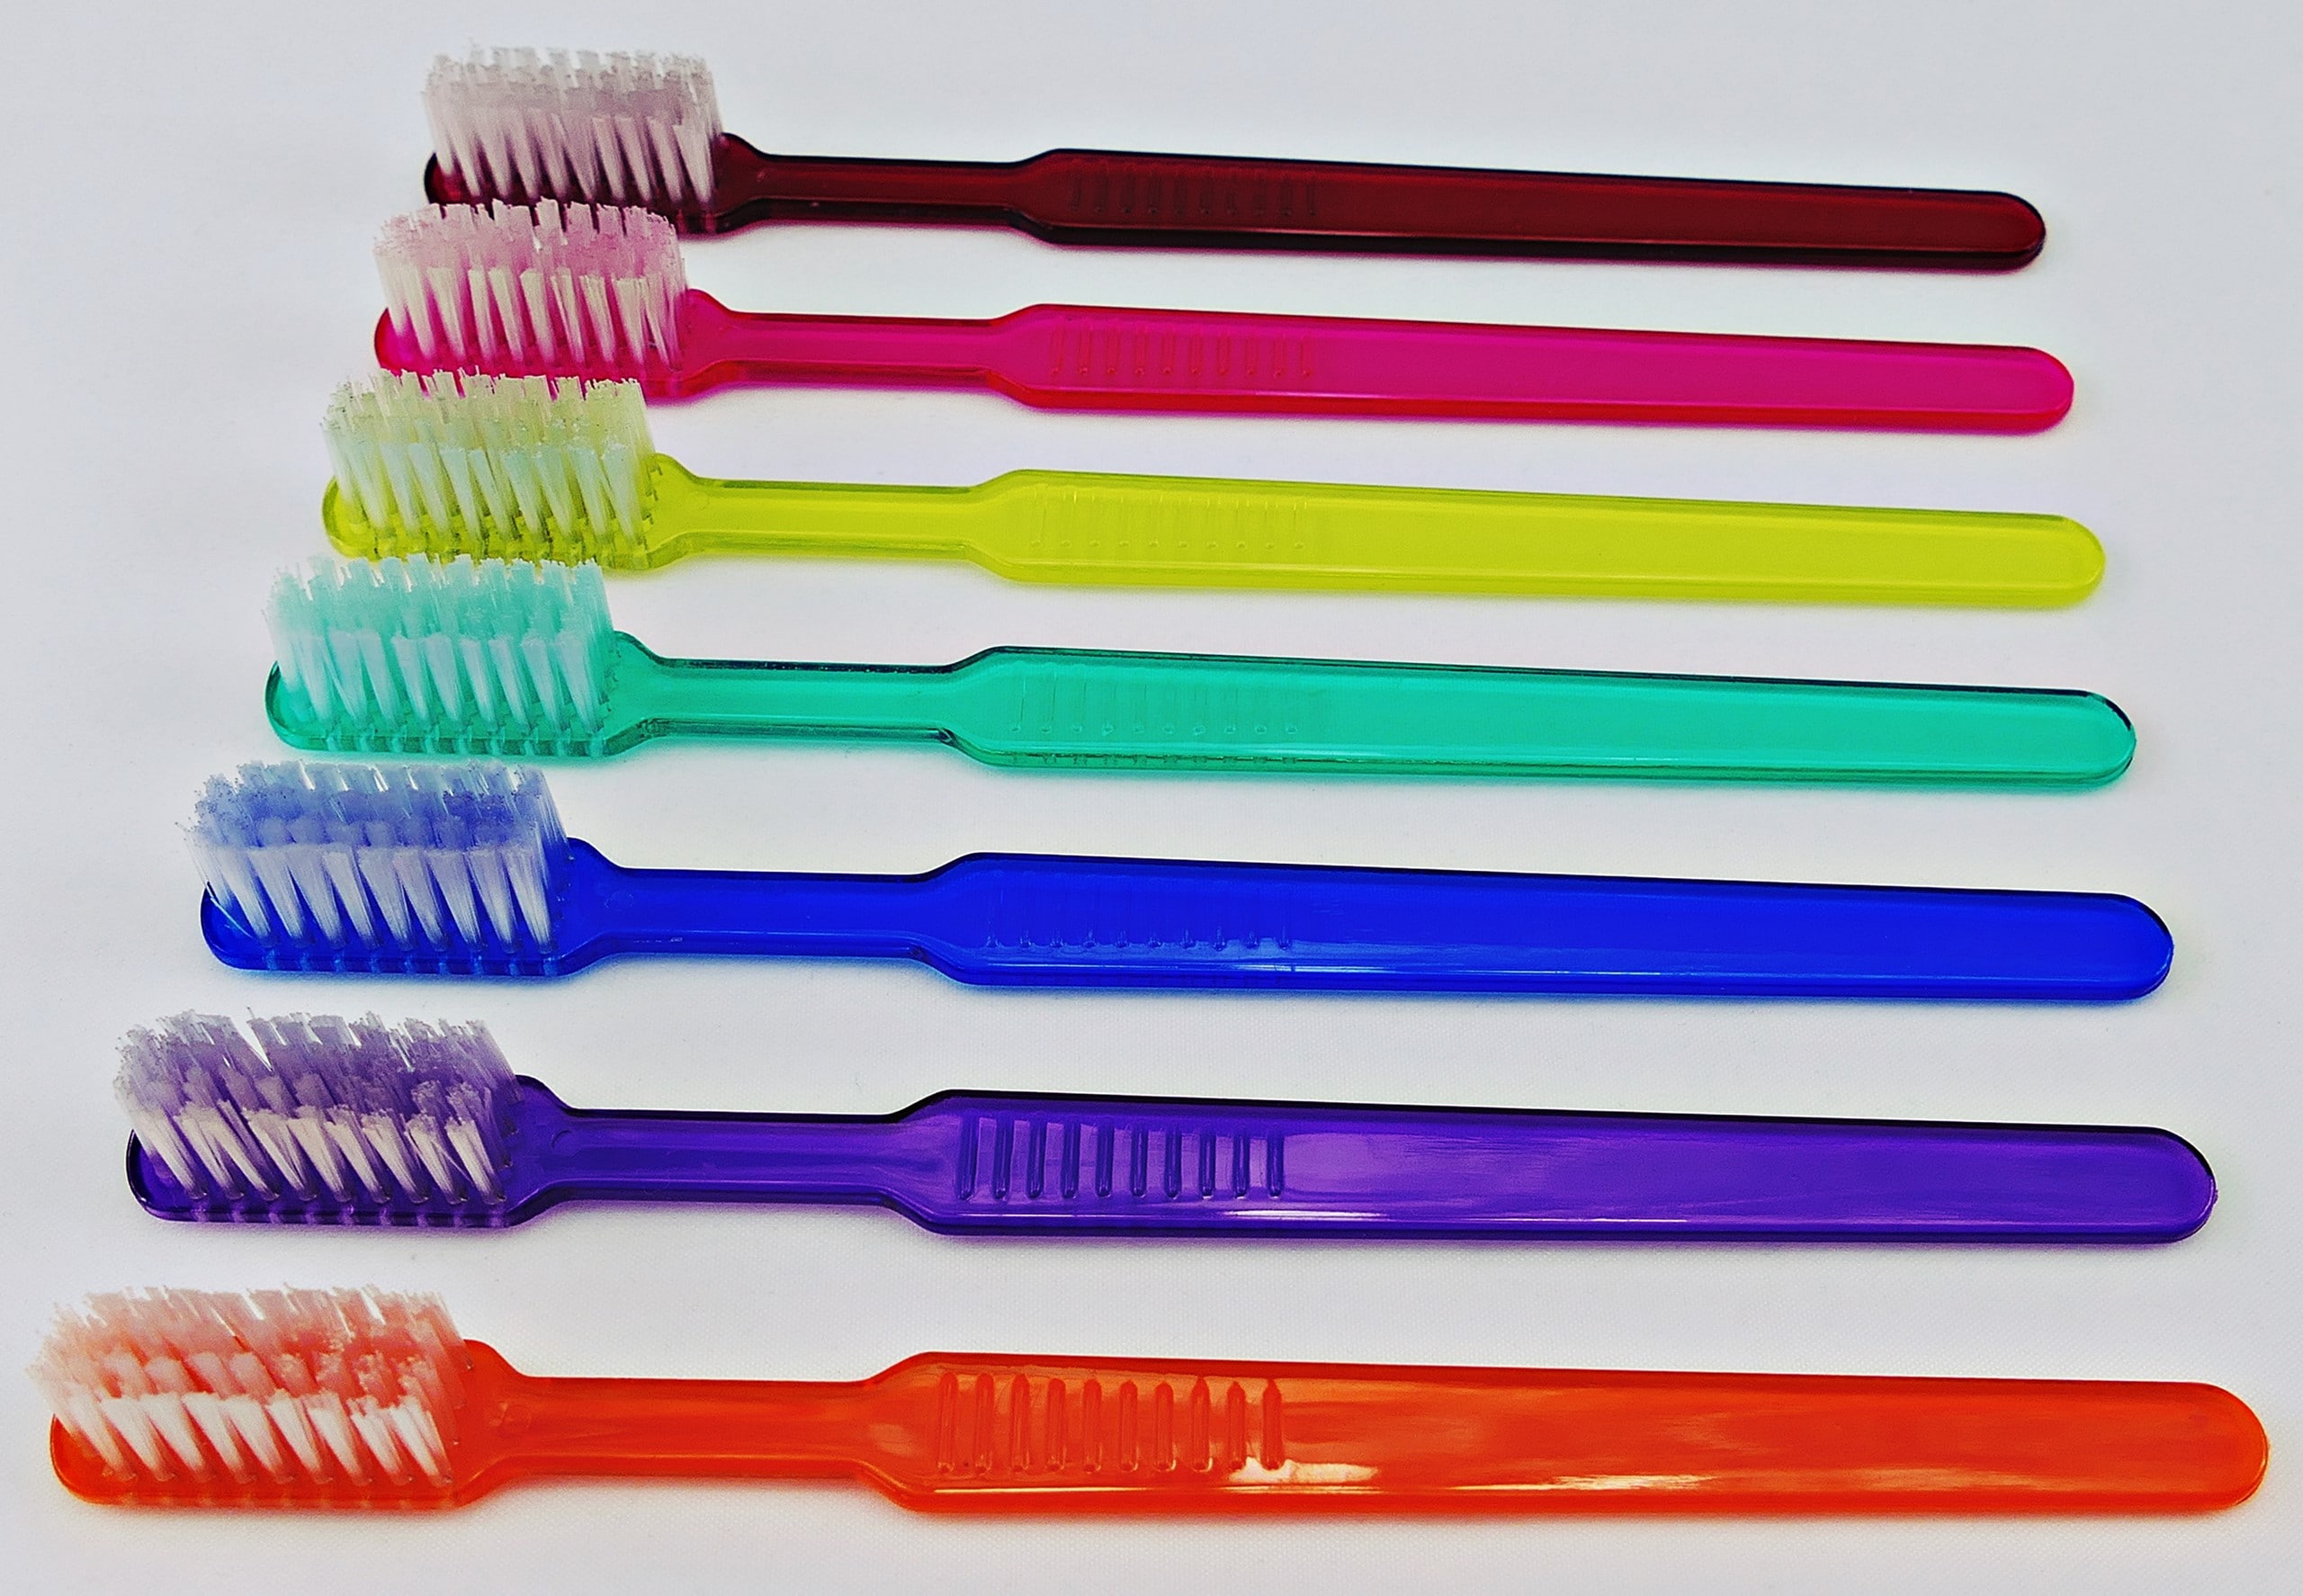 Engångstandborste D-Touch med tandkräm rosa 100st